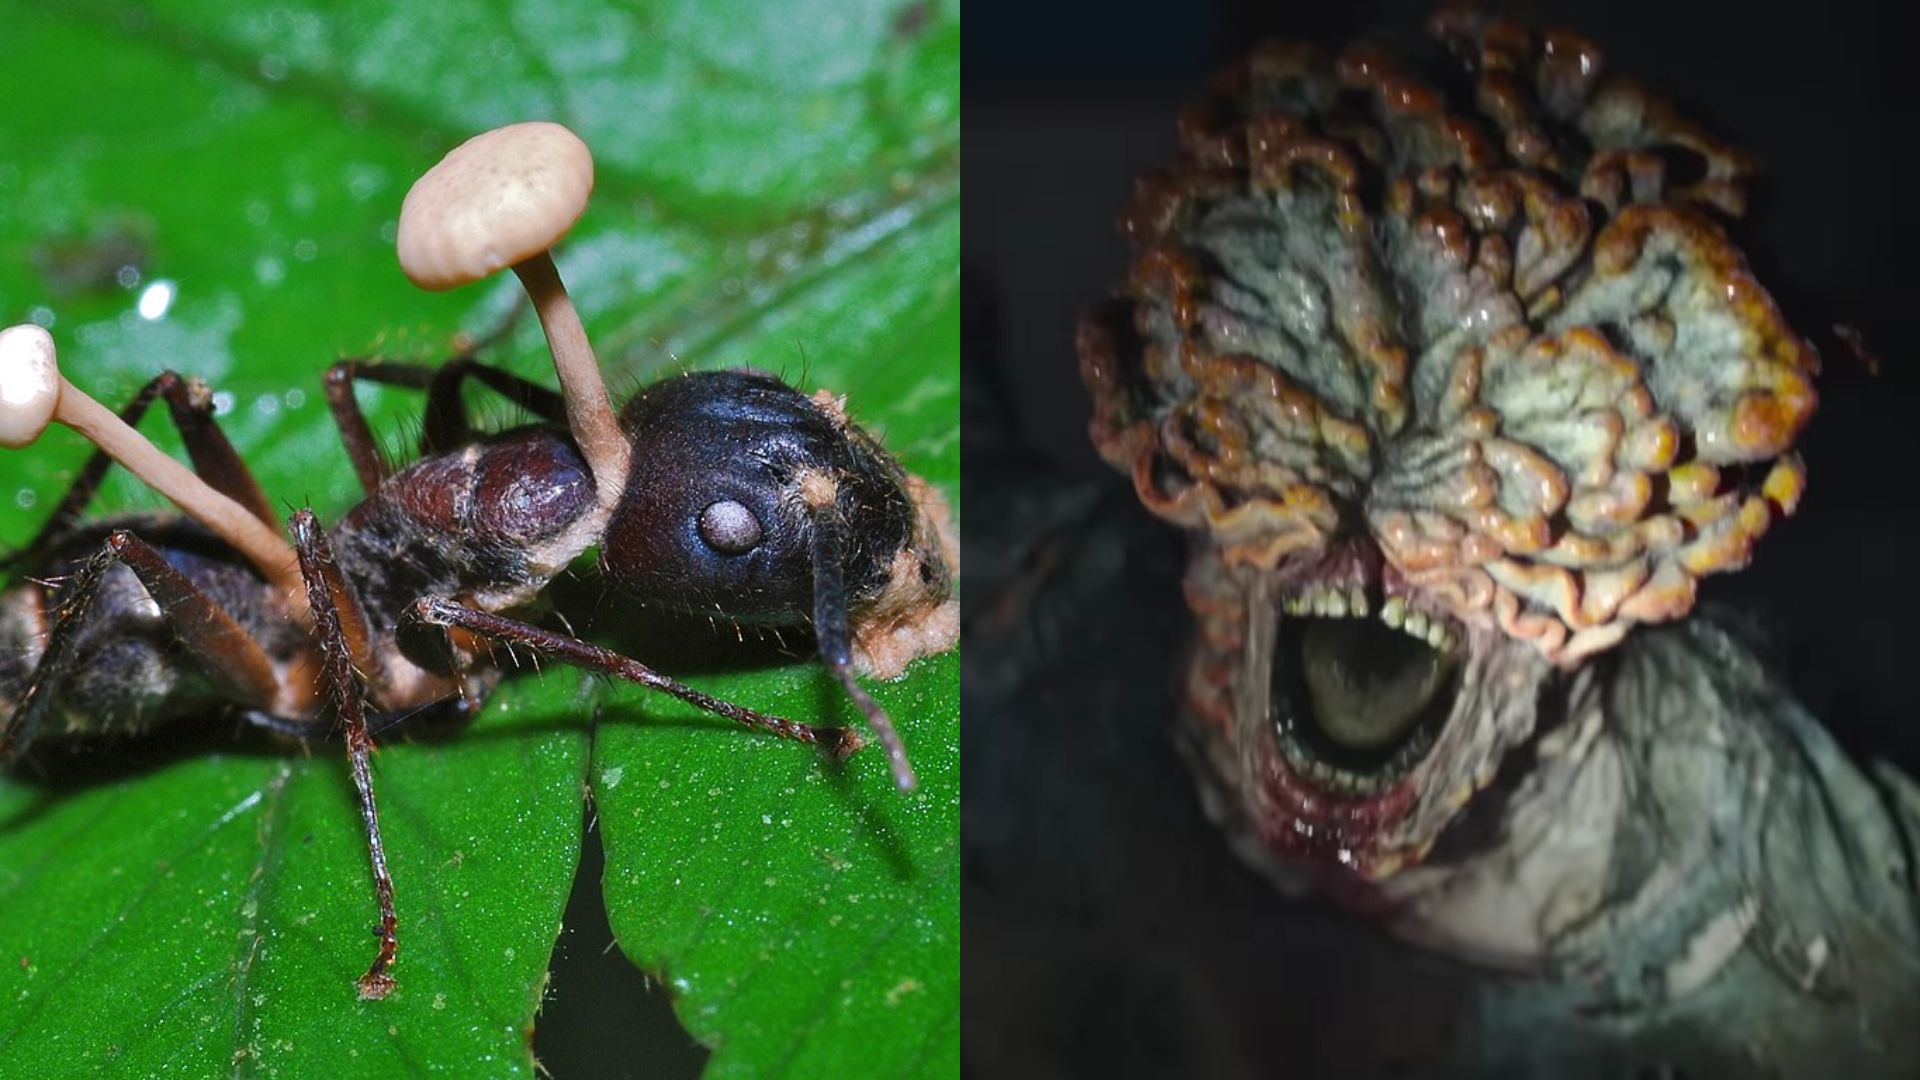 O fungo zombie de The Last of Us é real. Pode ele vir a controlar humanos?